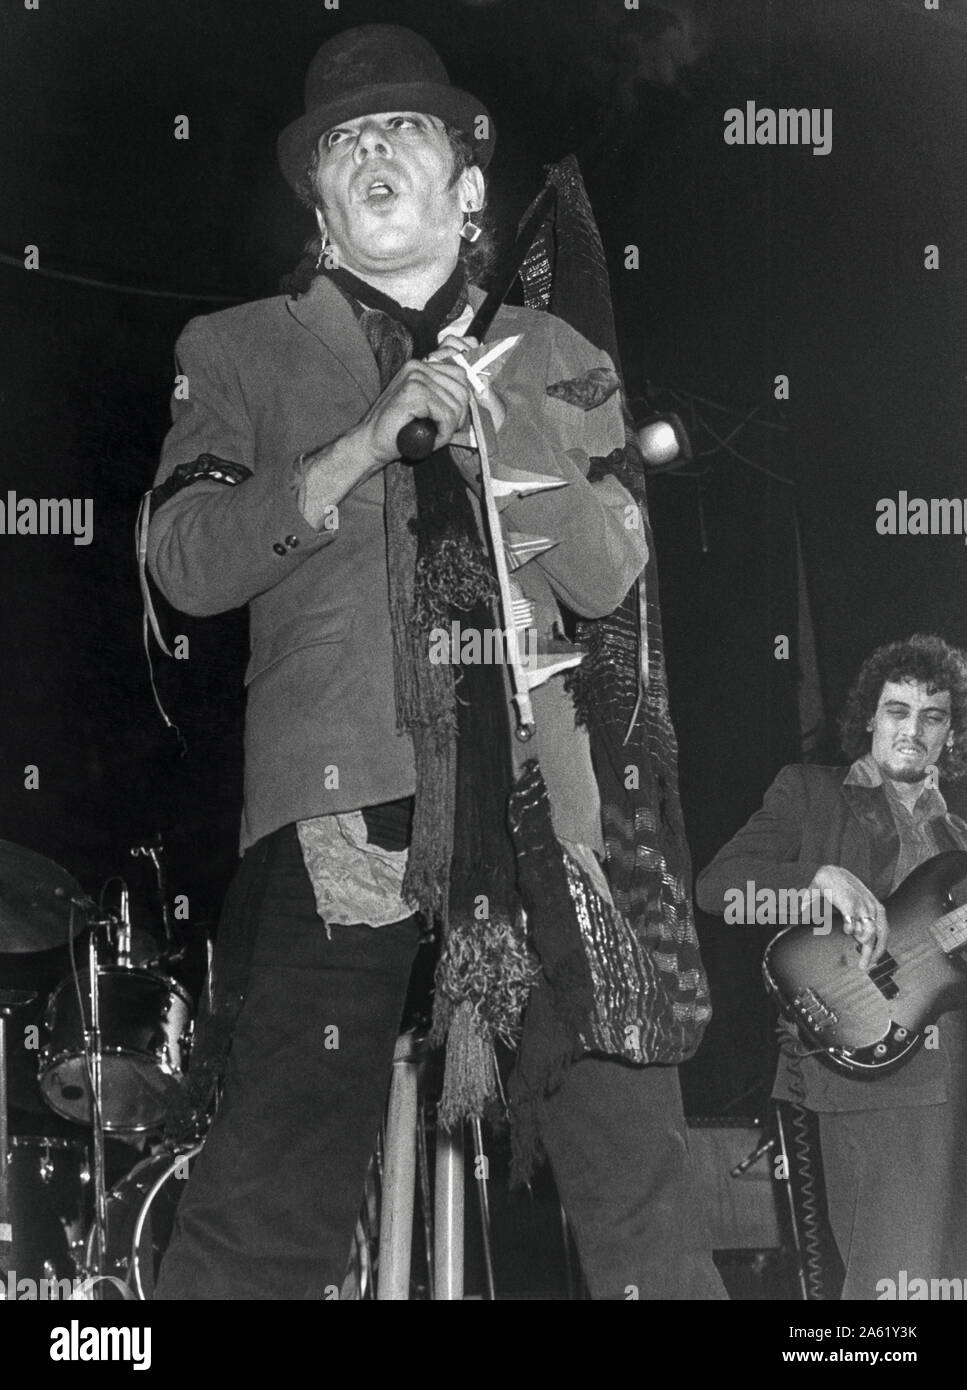 Ian Dury britischer Sänger und Songwriter an der Szene während Konzert Stockfoto